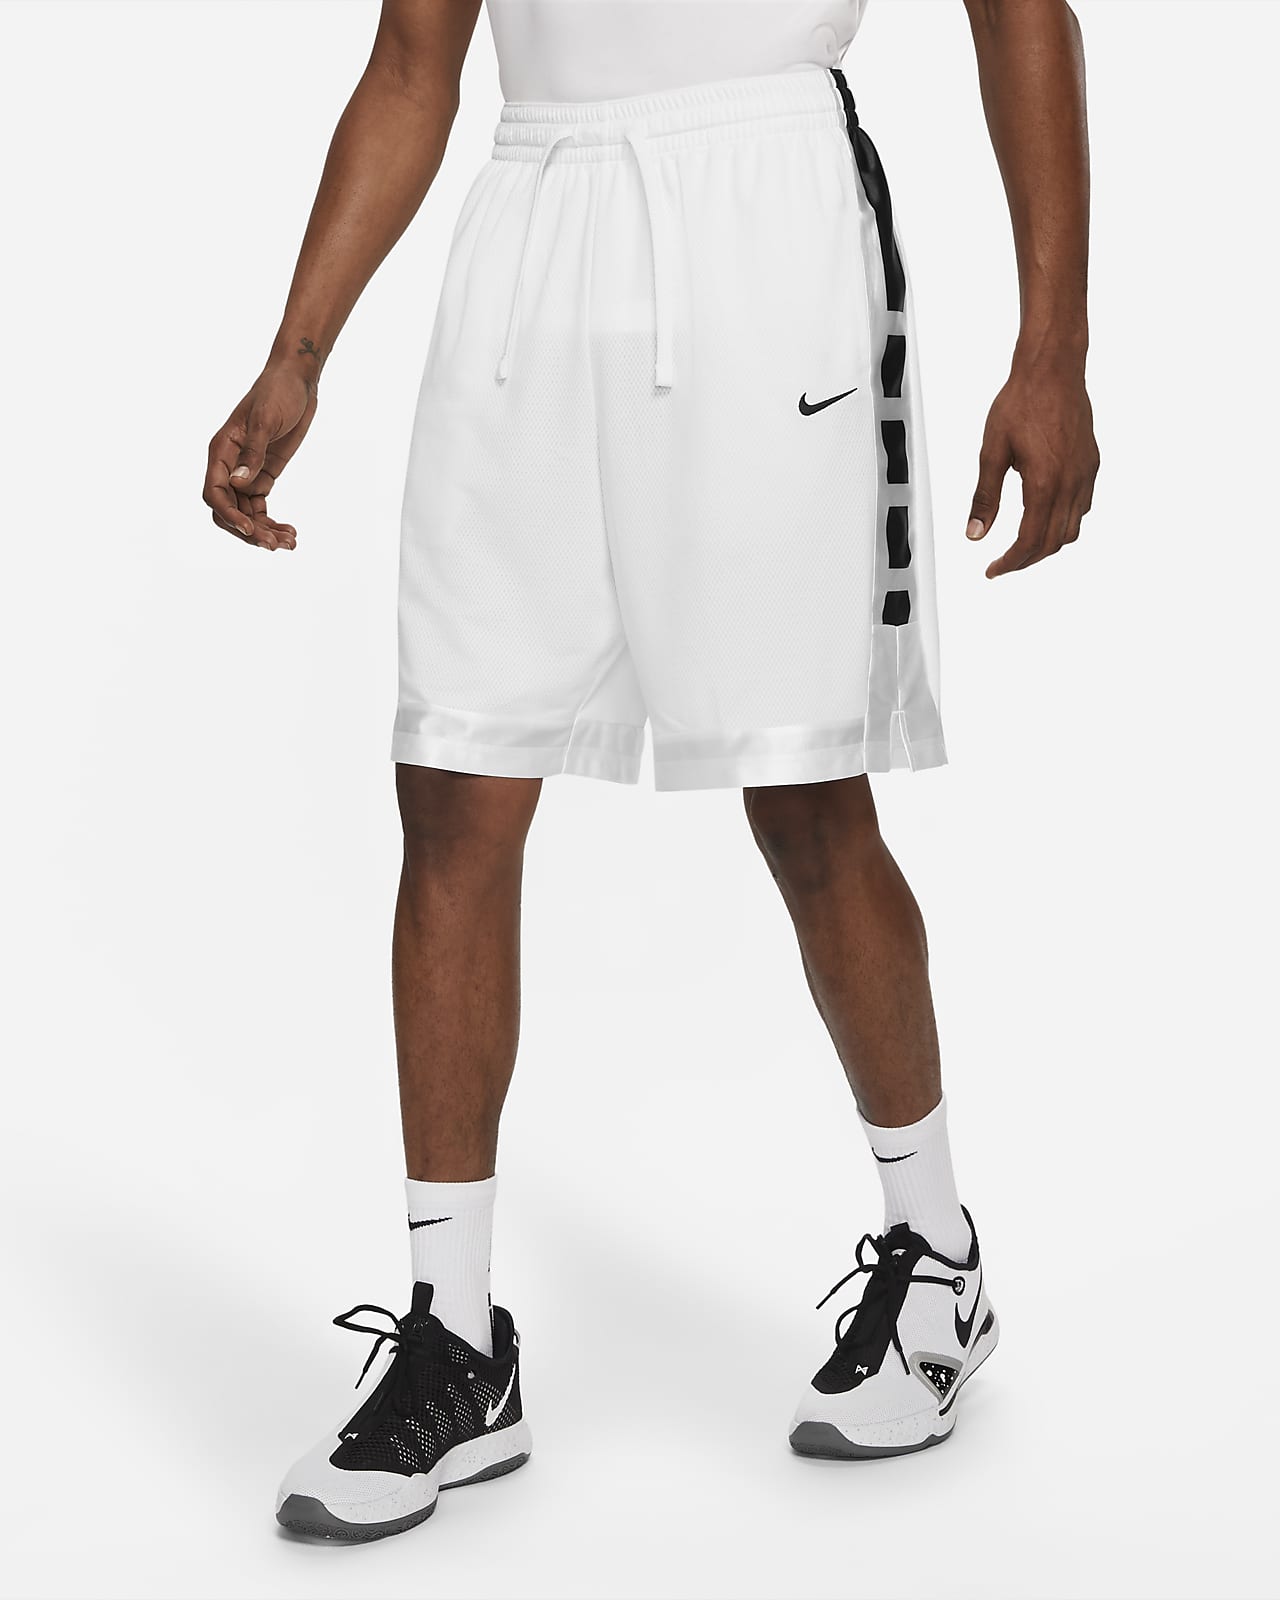 Dri-FIT Elite Stripe Men's Basketball Shorts. Nike.com